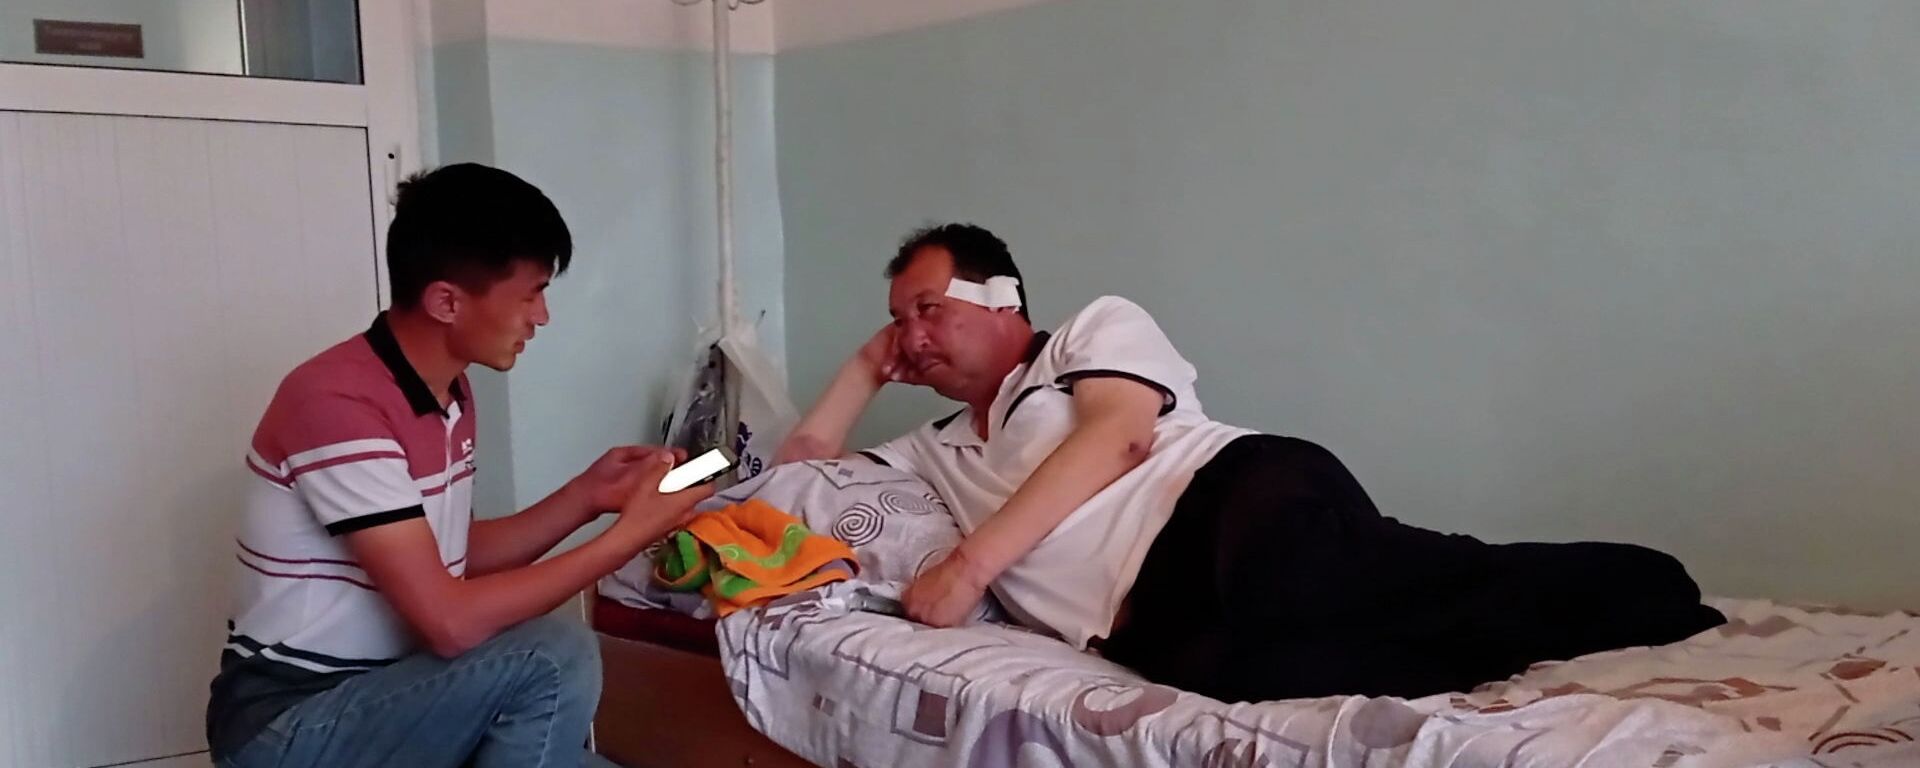 Искал своих, несмотря на стрельбу, — побывавший в заложниках глава села. Видео - Sputnik Кыргызстан, 1920, 04.05.2021